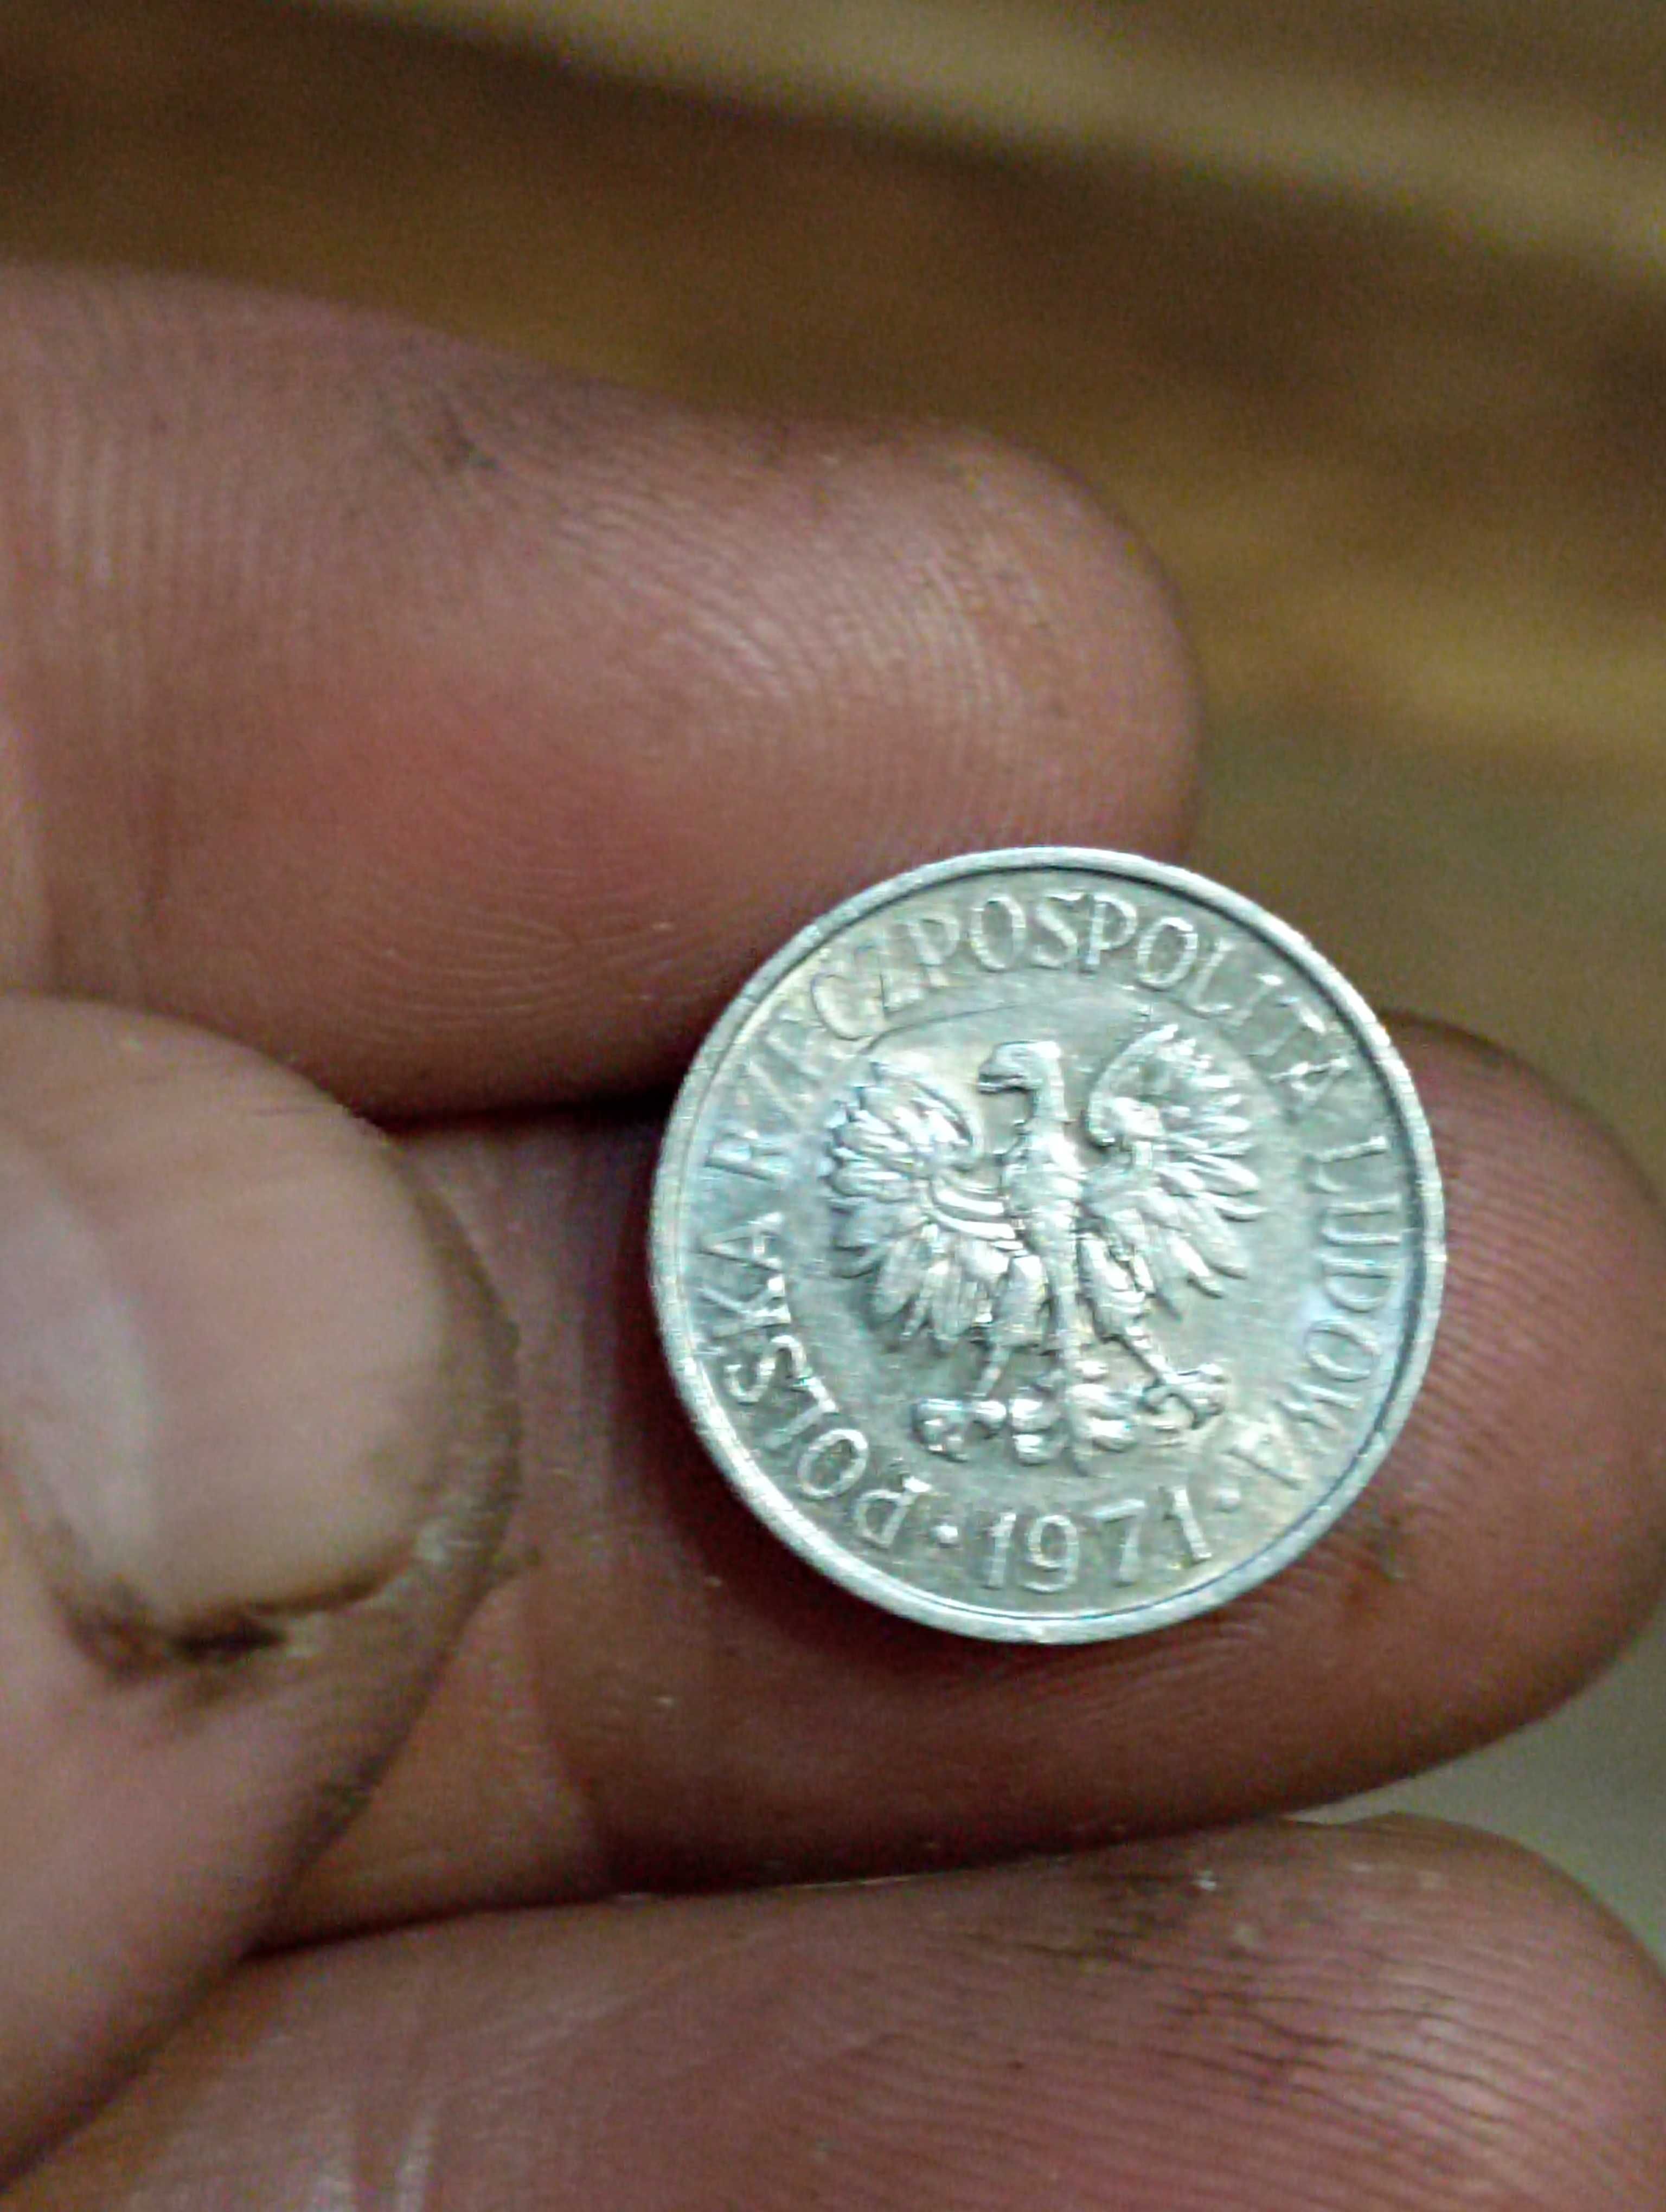 Moneta druga 5 groszy 1971 r